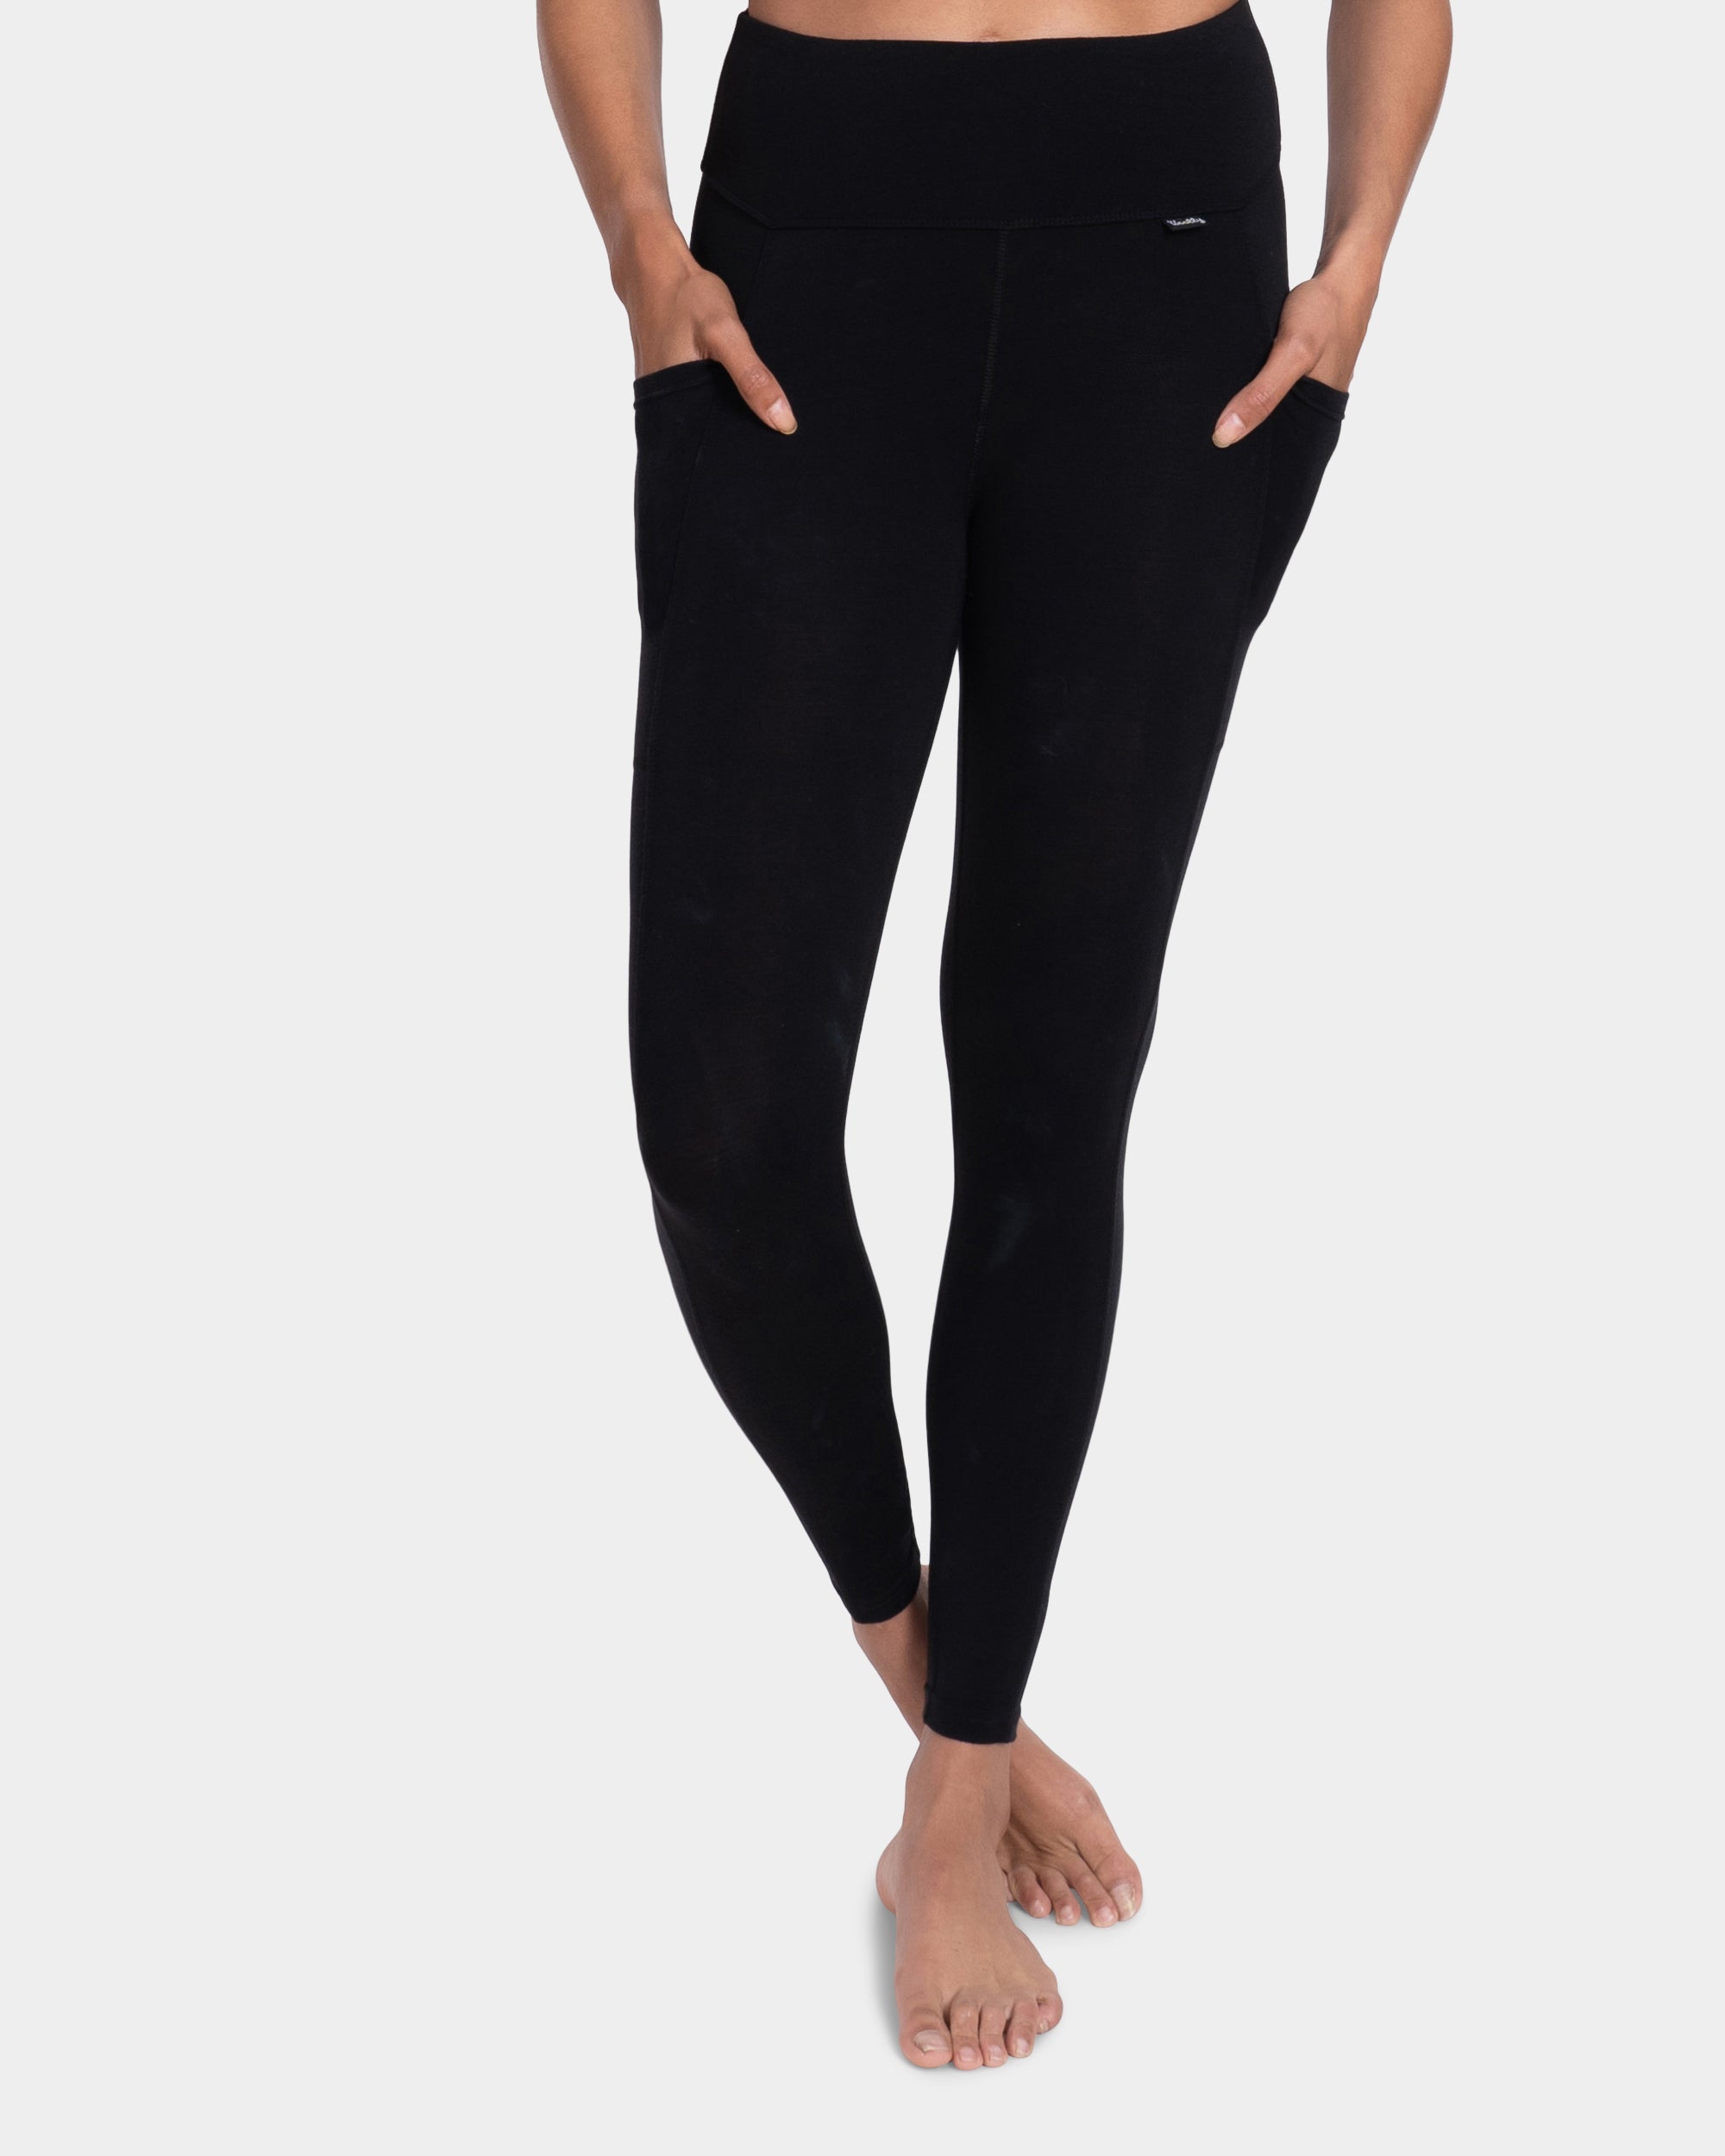 High-Waisted Cold-Weather Pocket Legging - black  Active wear for women,  Pocket leggings, High waisted black leggings